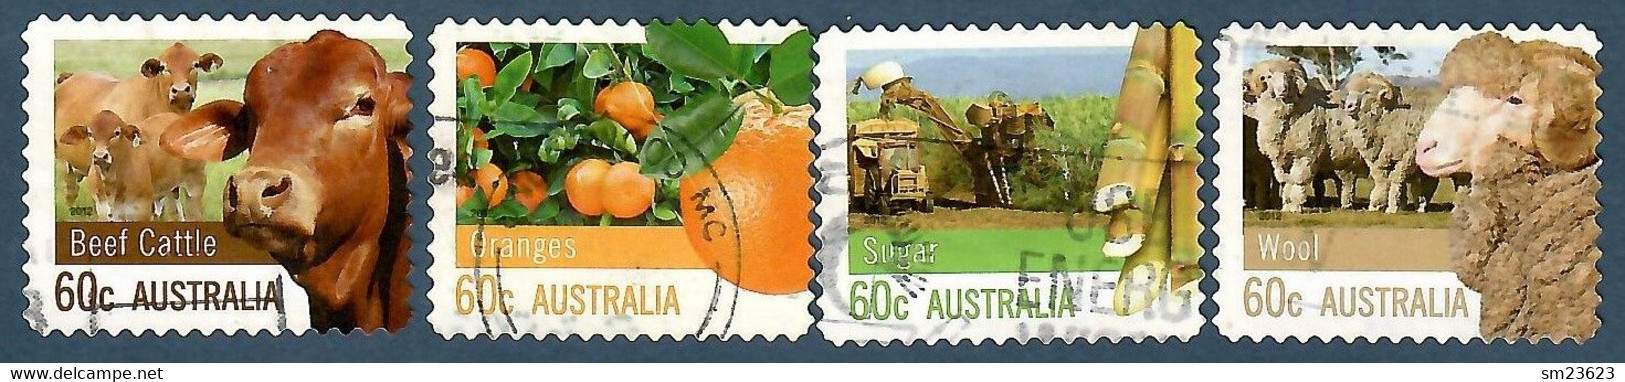 Australien 2012 Mi.Nr. 3761 / 64 BA , Wool -Sugar - Beef Cattle - Oranges - Self-adhesive - Gestempelt / Fine Used / (o) - Used Stamps